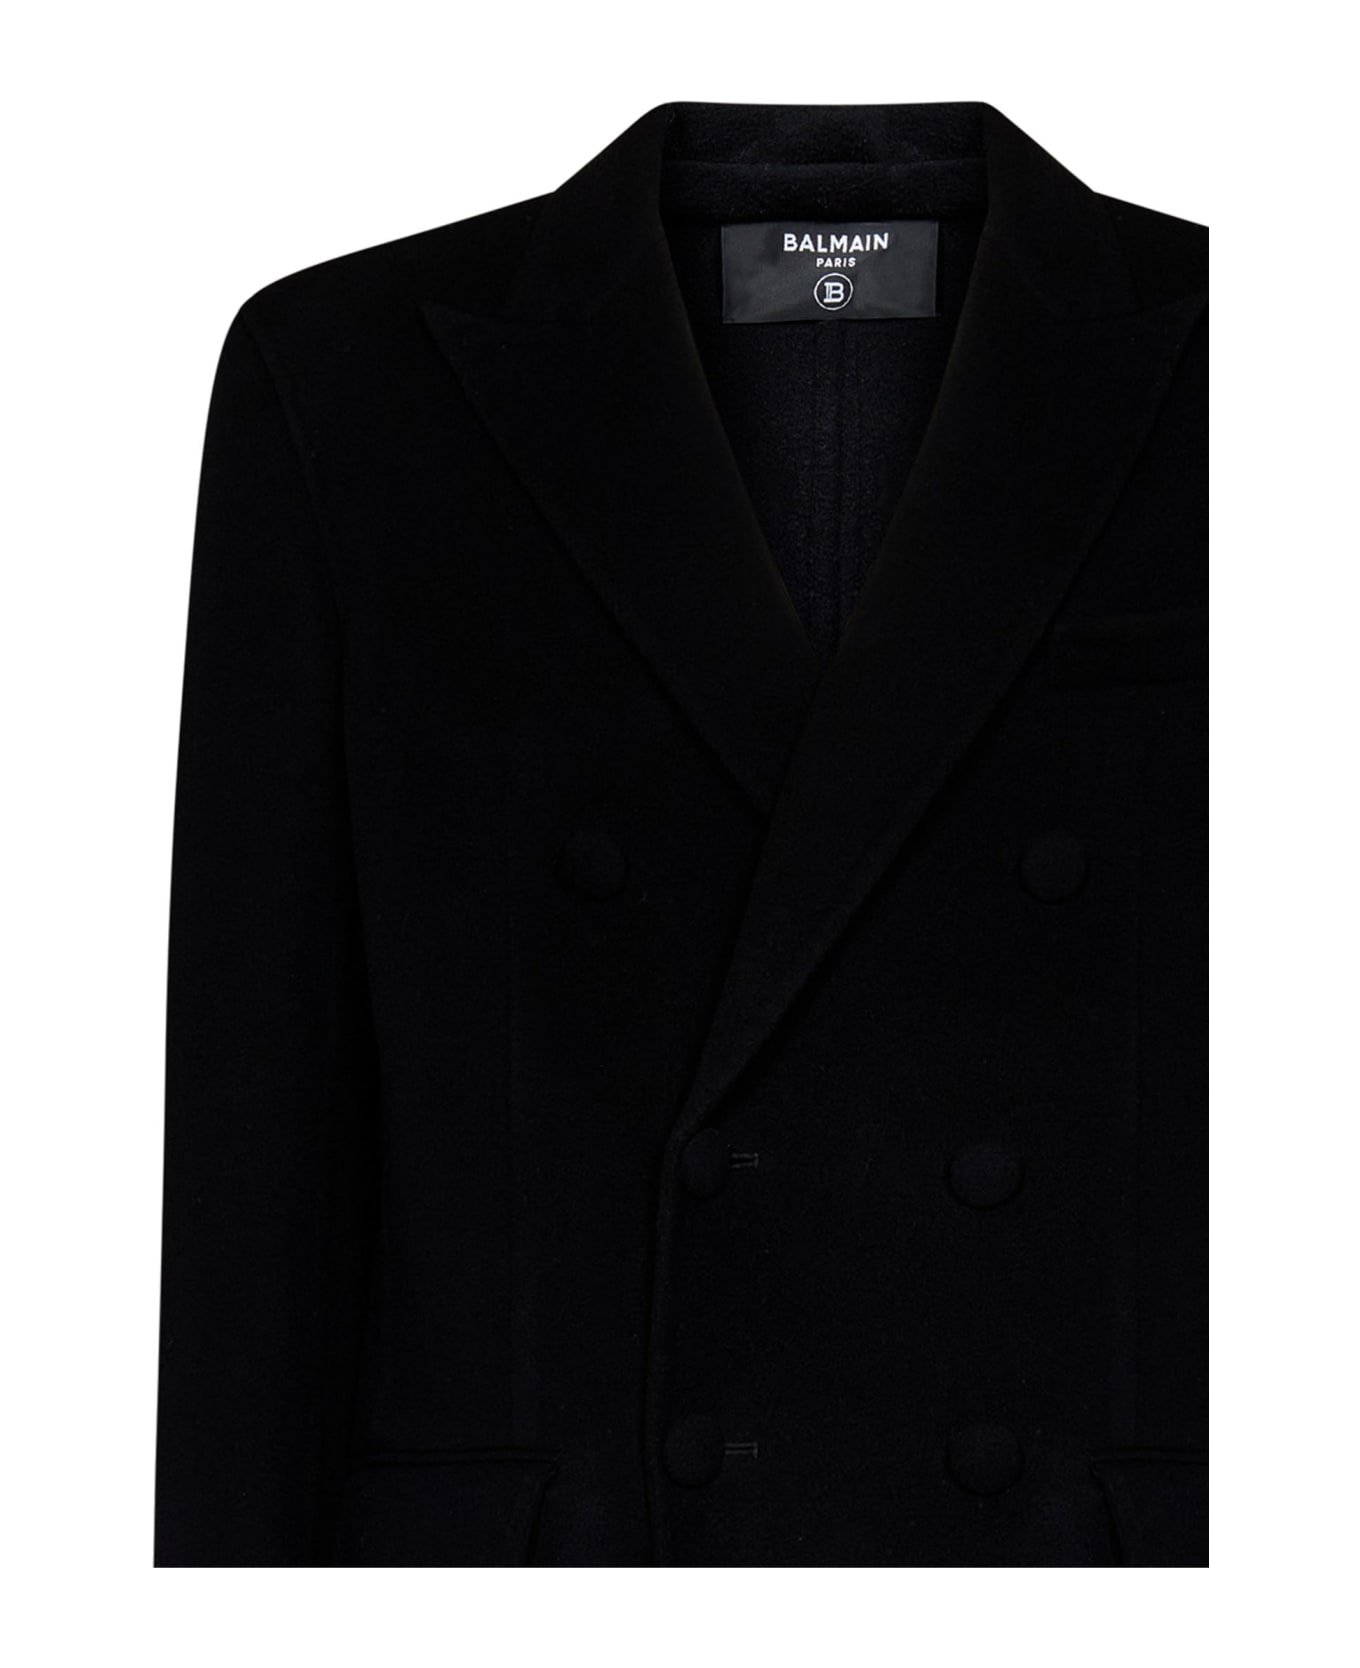 Balmain Coat - Black レインコート